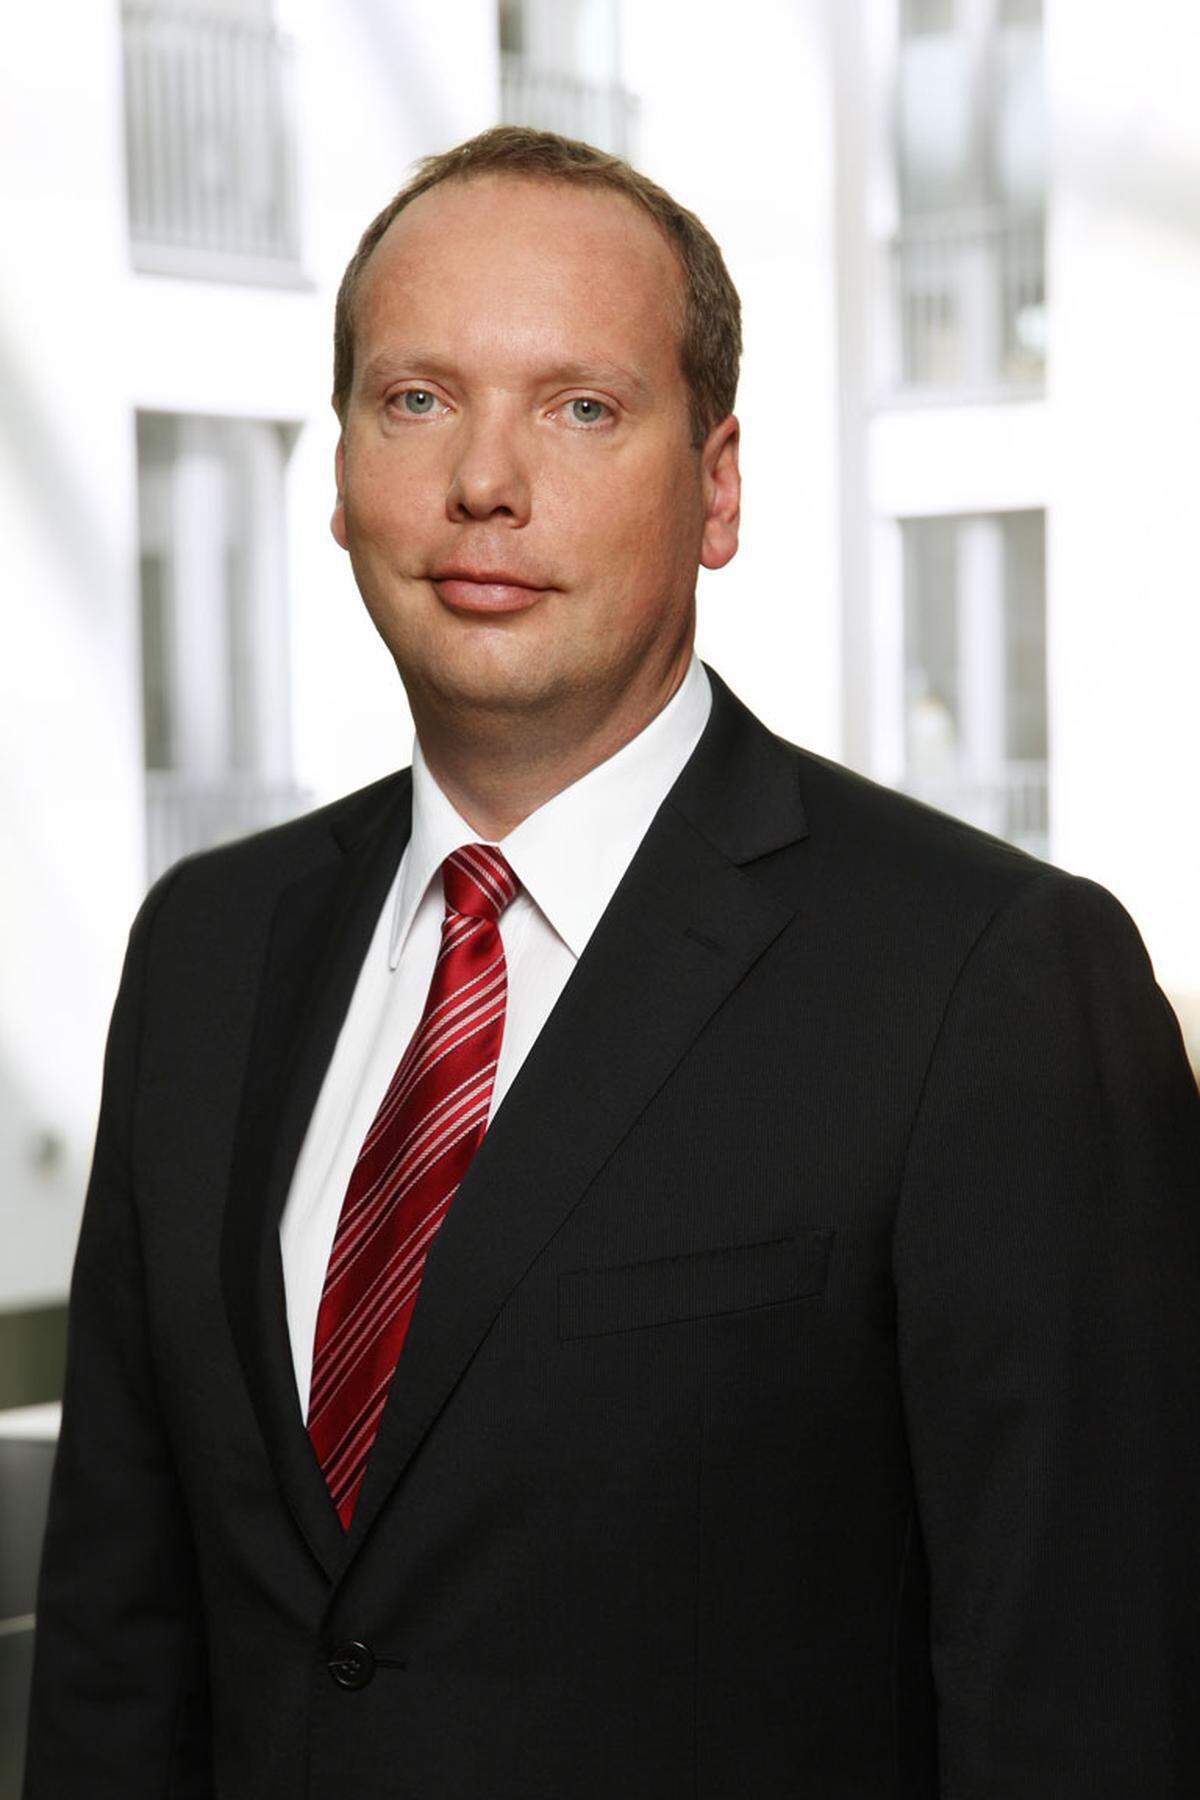 Walter Bohmayr (45), verantwortlich für Risikomanagement sowie Operations &amp; IT in CEE, steigt bei The Boston Consulting Group (BCG) zum Senior Partner auf. Er ist bereits seit 1999 Unternehmensberater bei BCG. Er startete seine Karriere in Zürich. Seit 2007 ist er Partner bei BCG Wien und berät überwiegend europäische Banken.